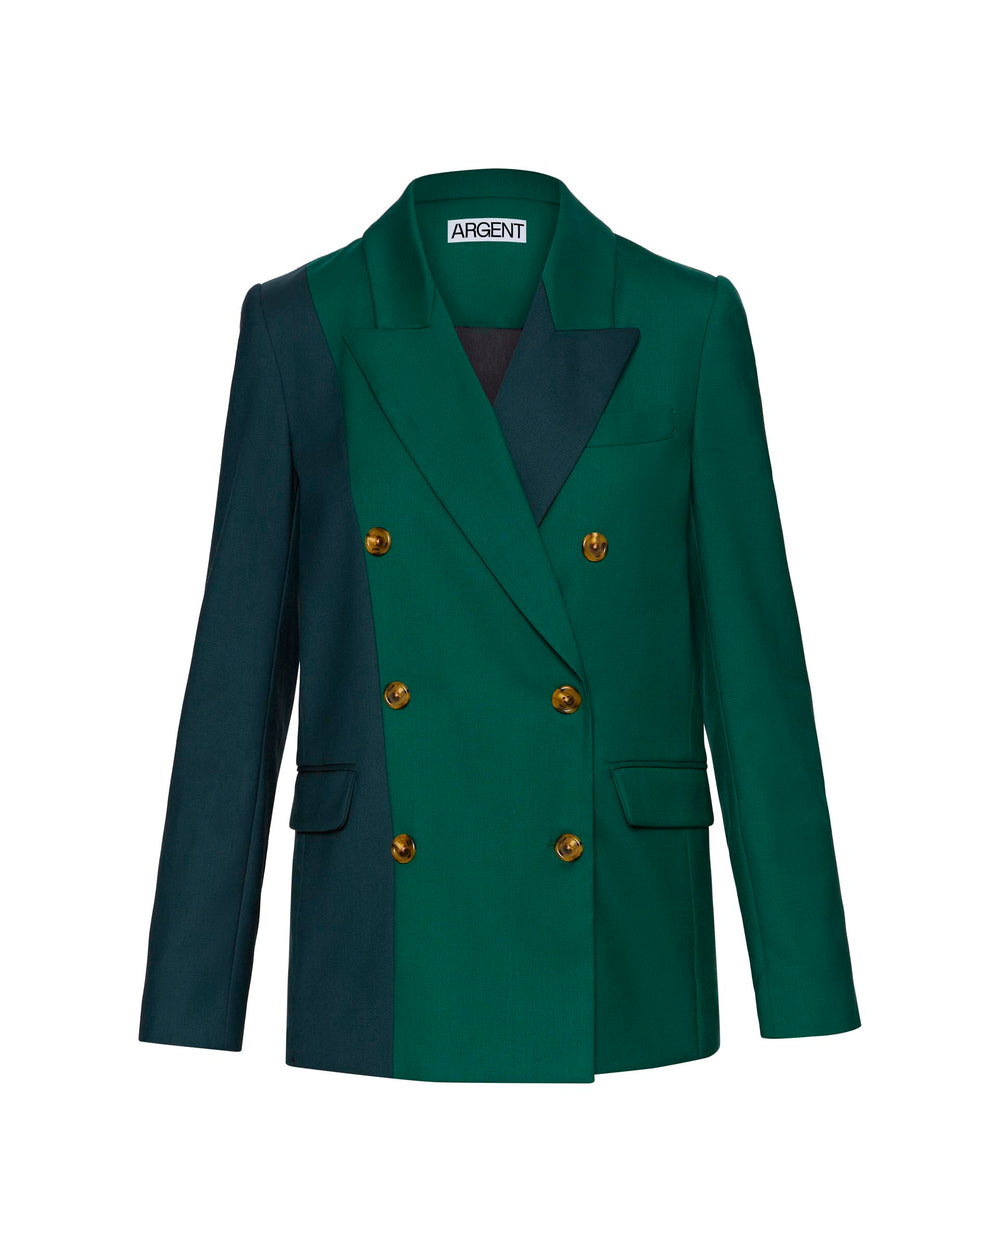 Colorblocked Peak Lapel Blazer in Seasonless Wool | Emerald/Forest